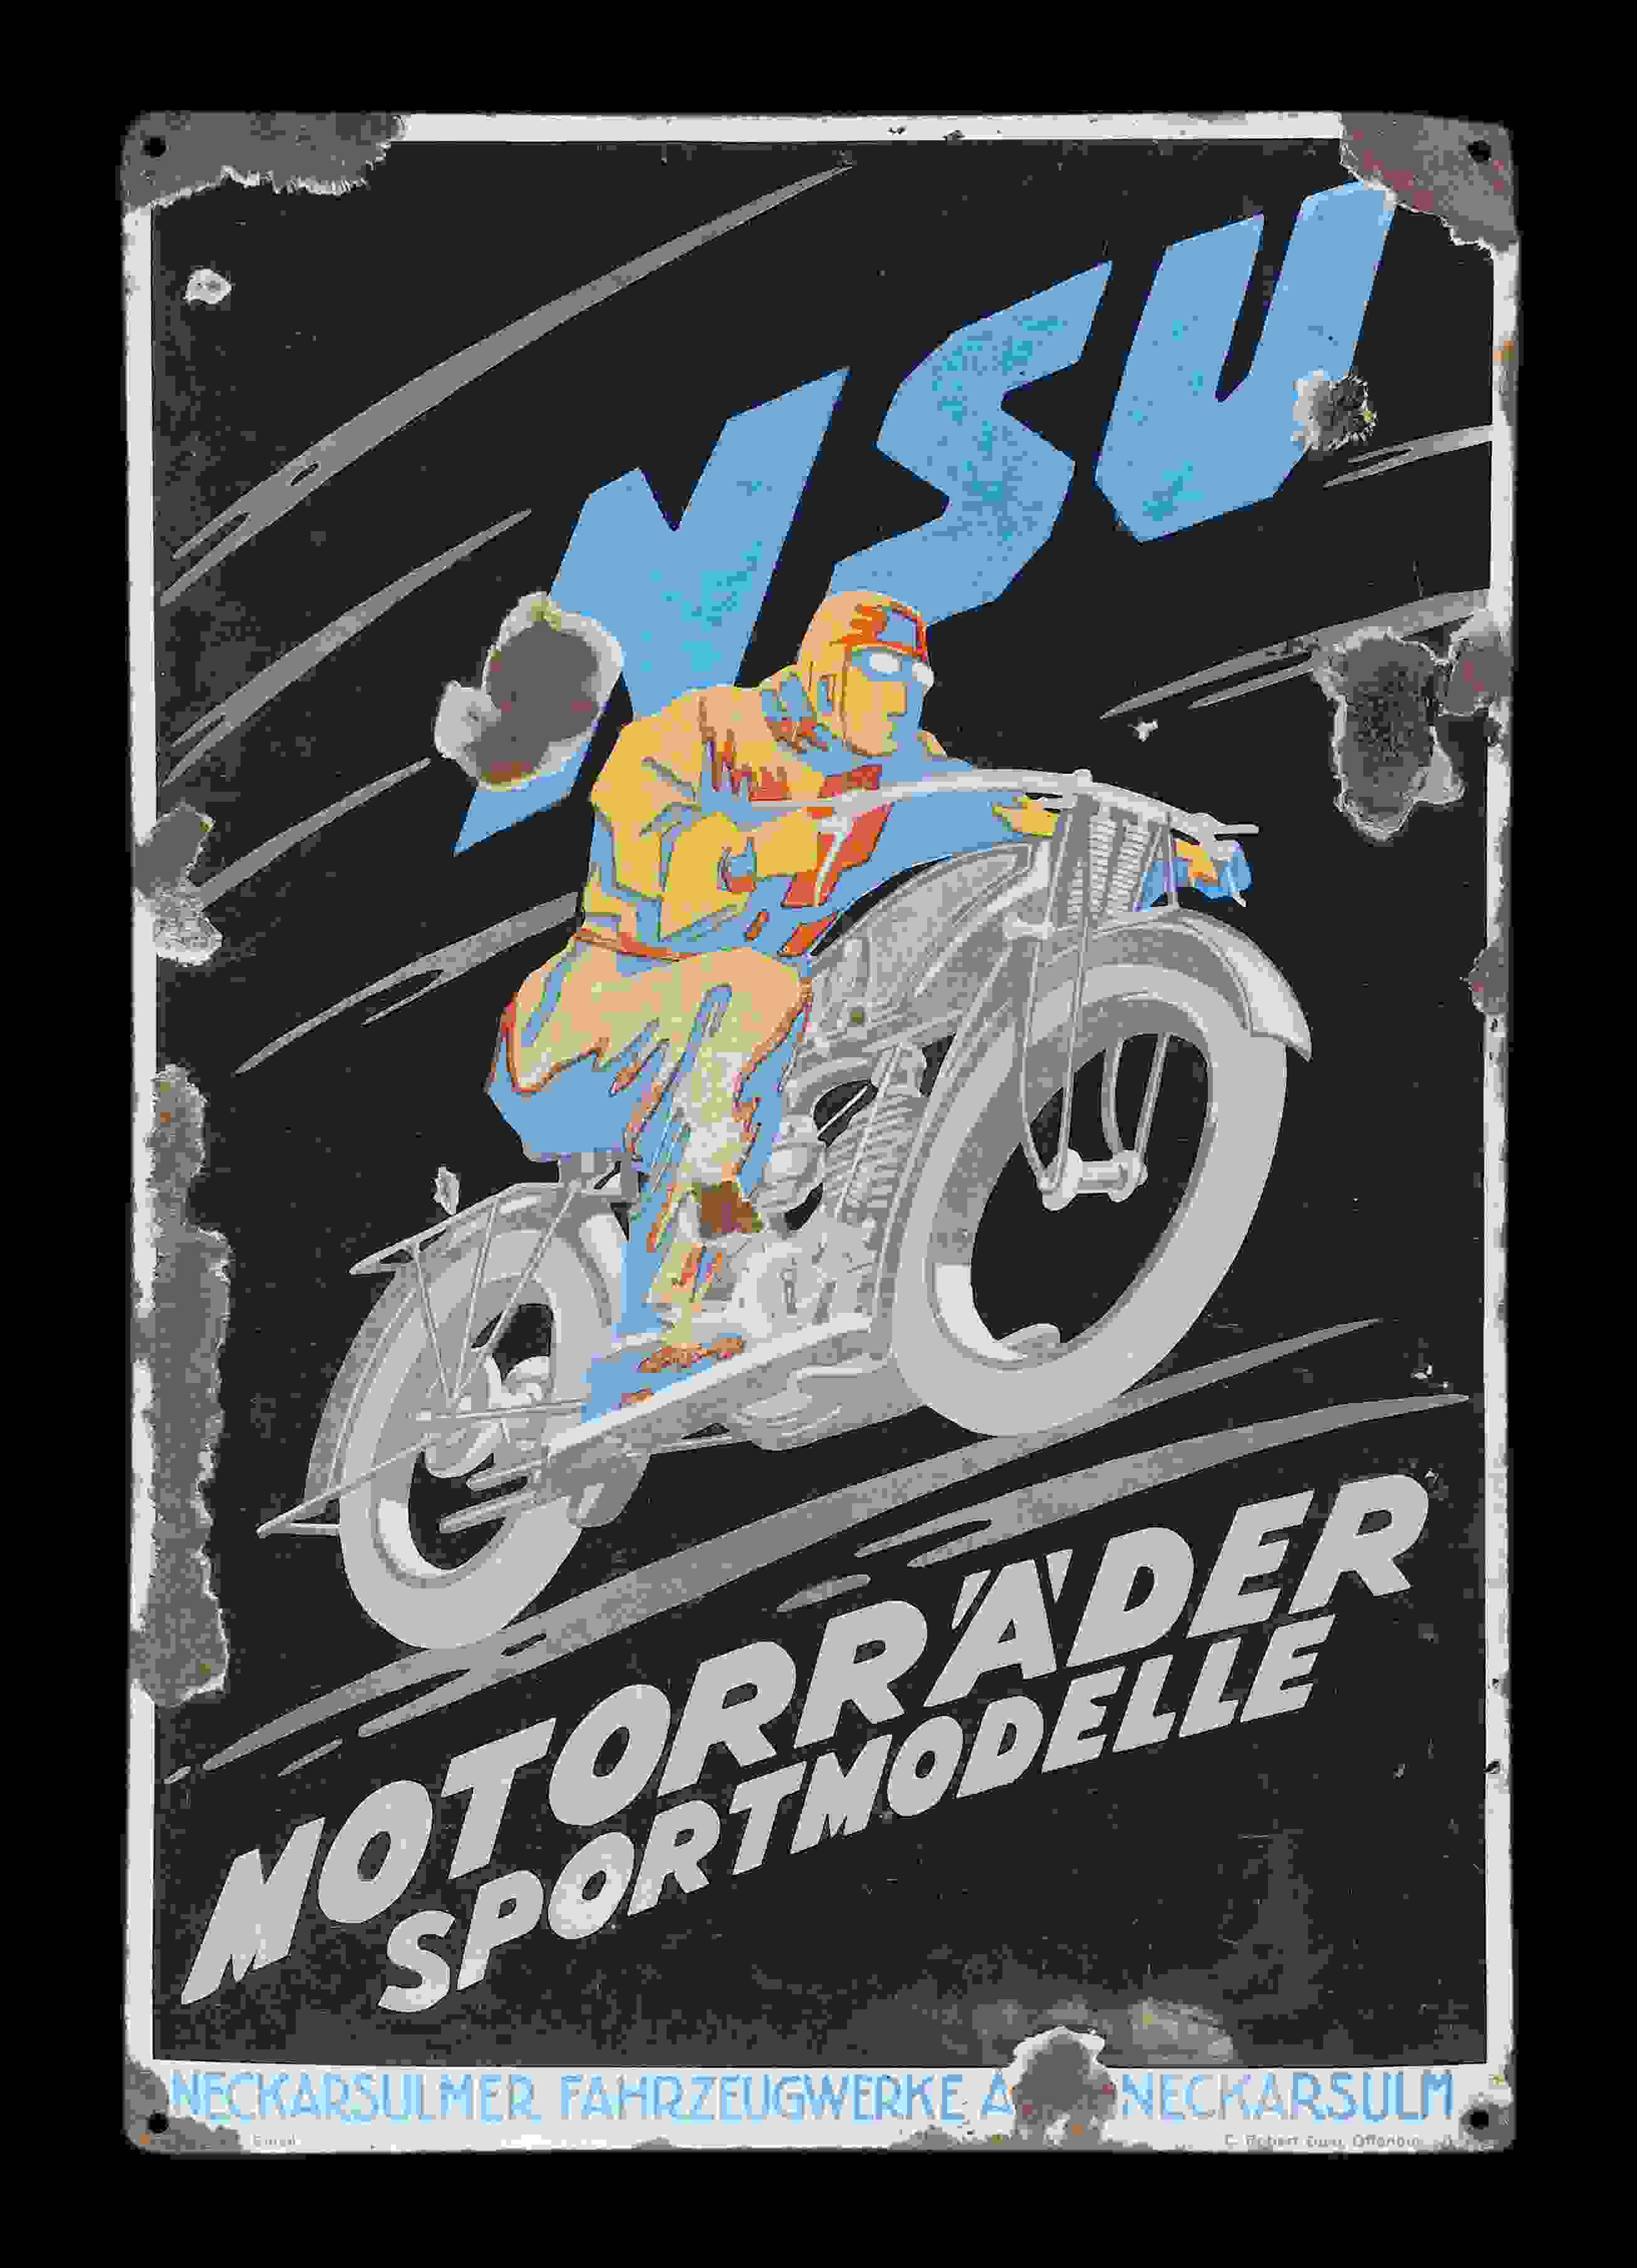 NSU Motorräder Sportmodell 